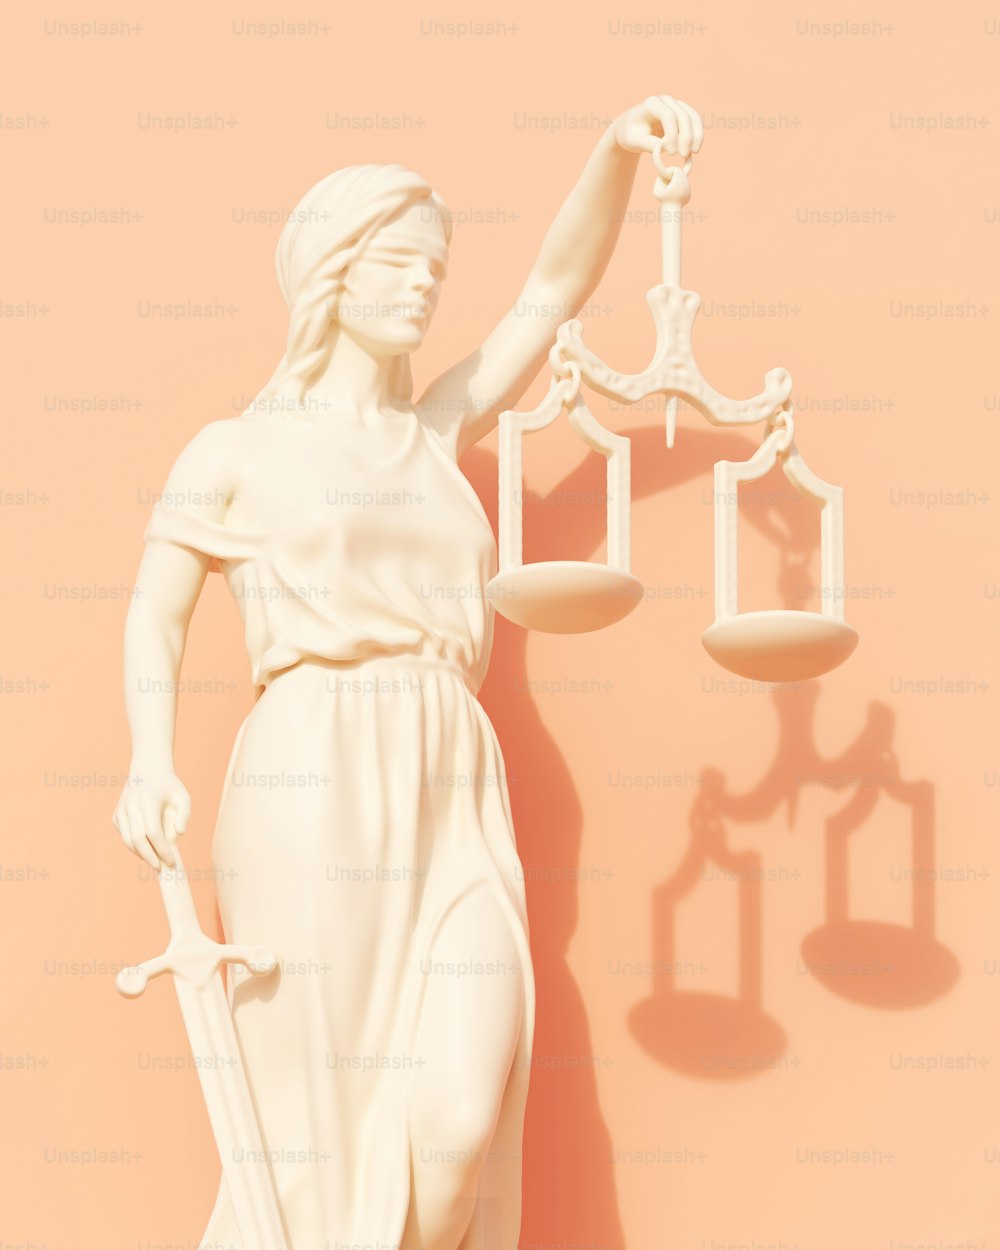 Una estatua de una dama de la justicia sosteniendo una balanza de justicia